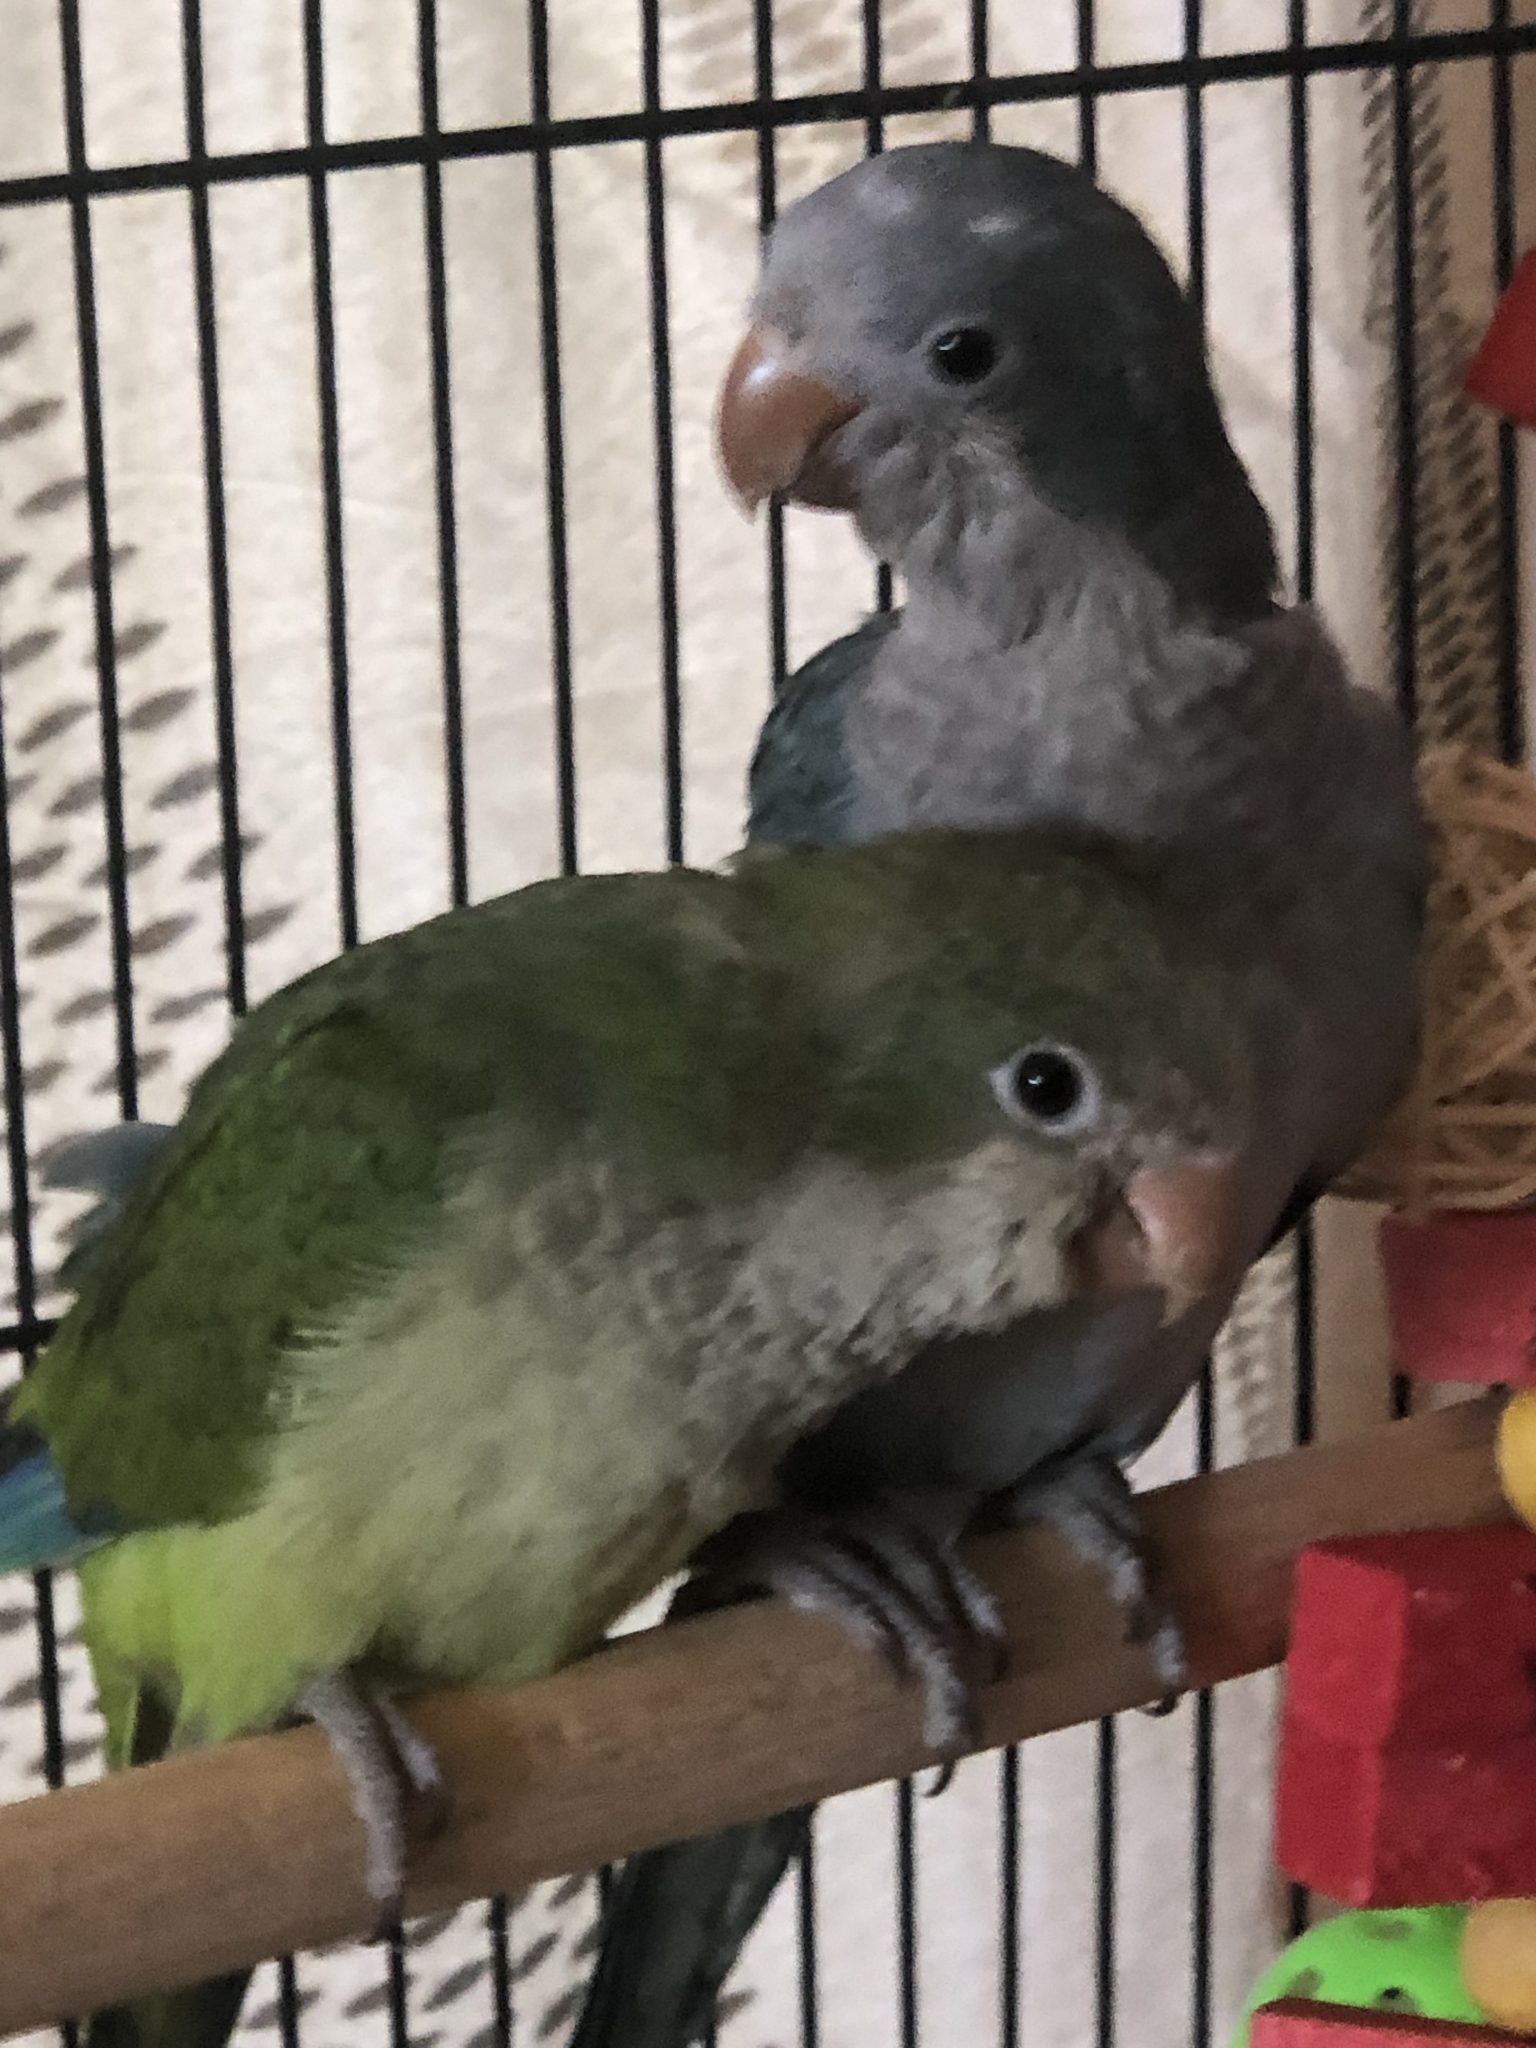 Quaker Parrots